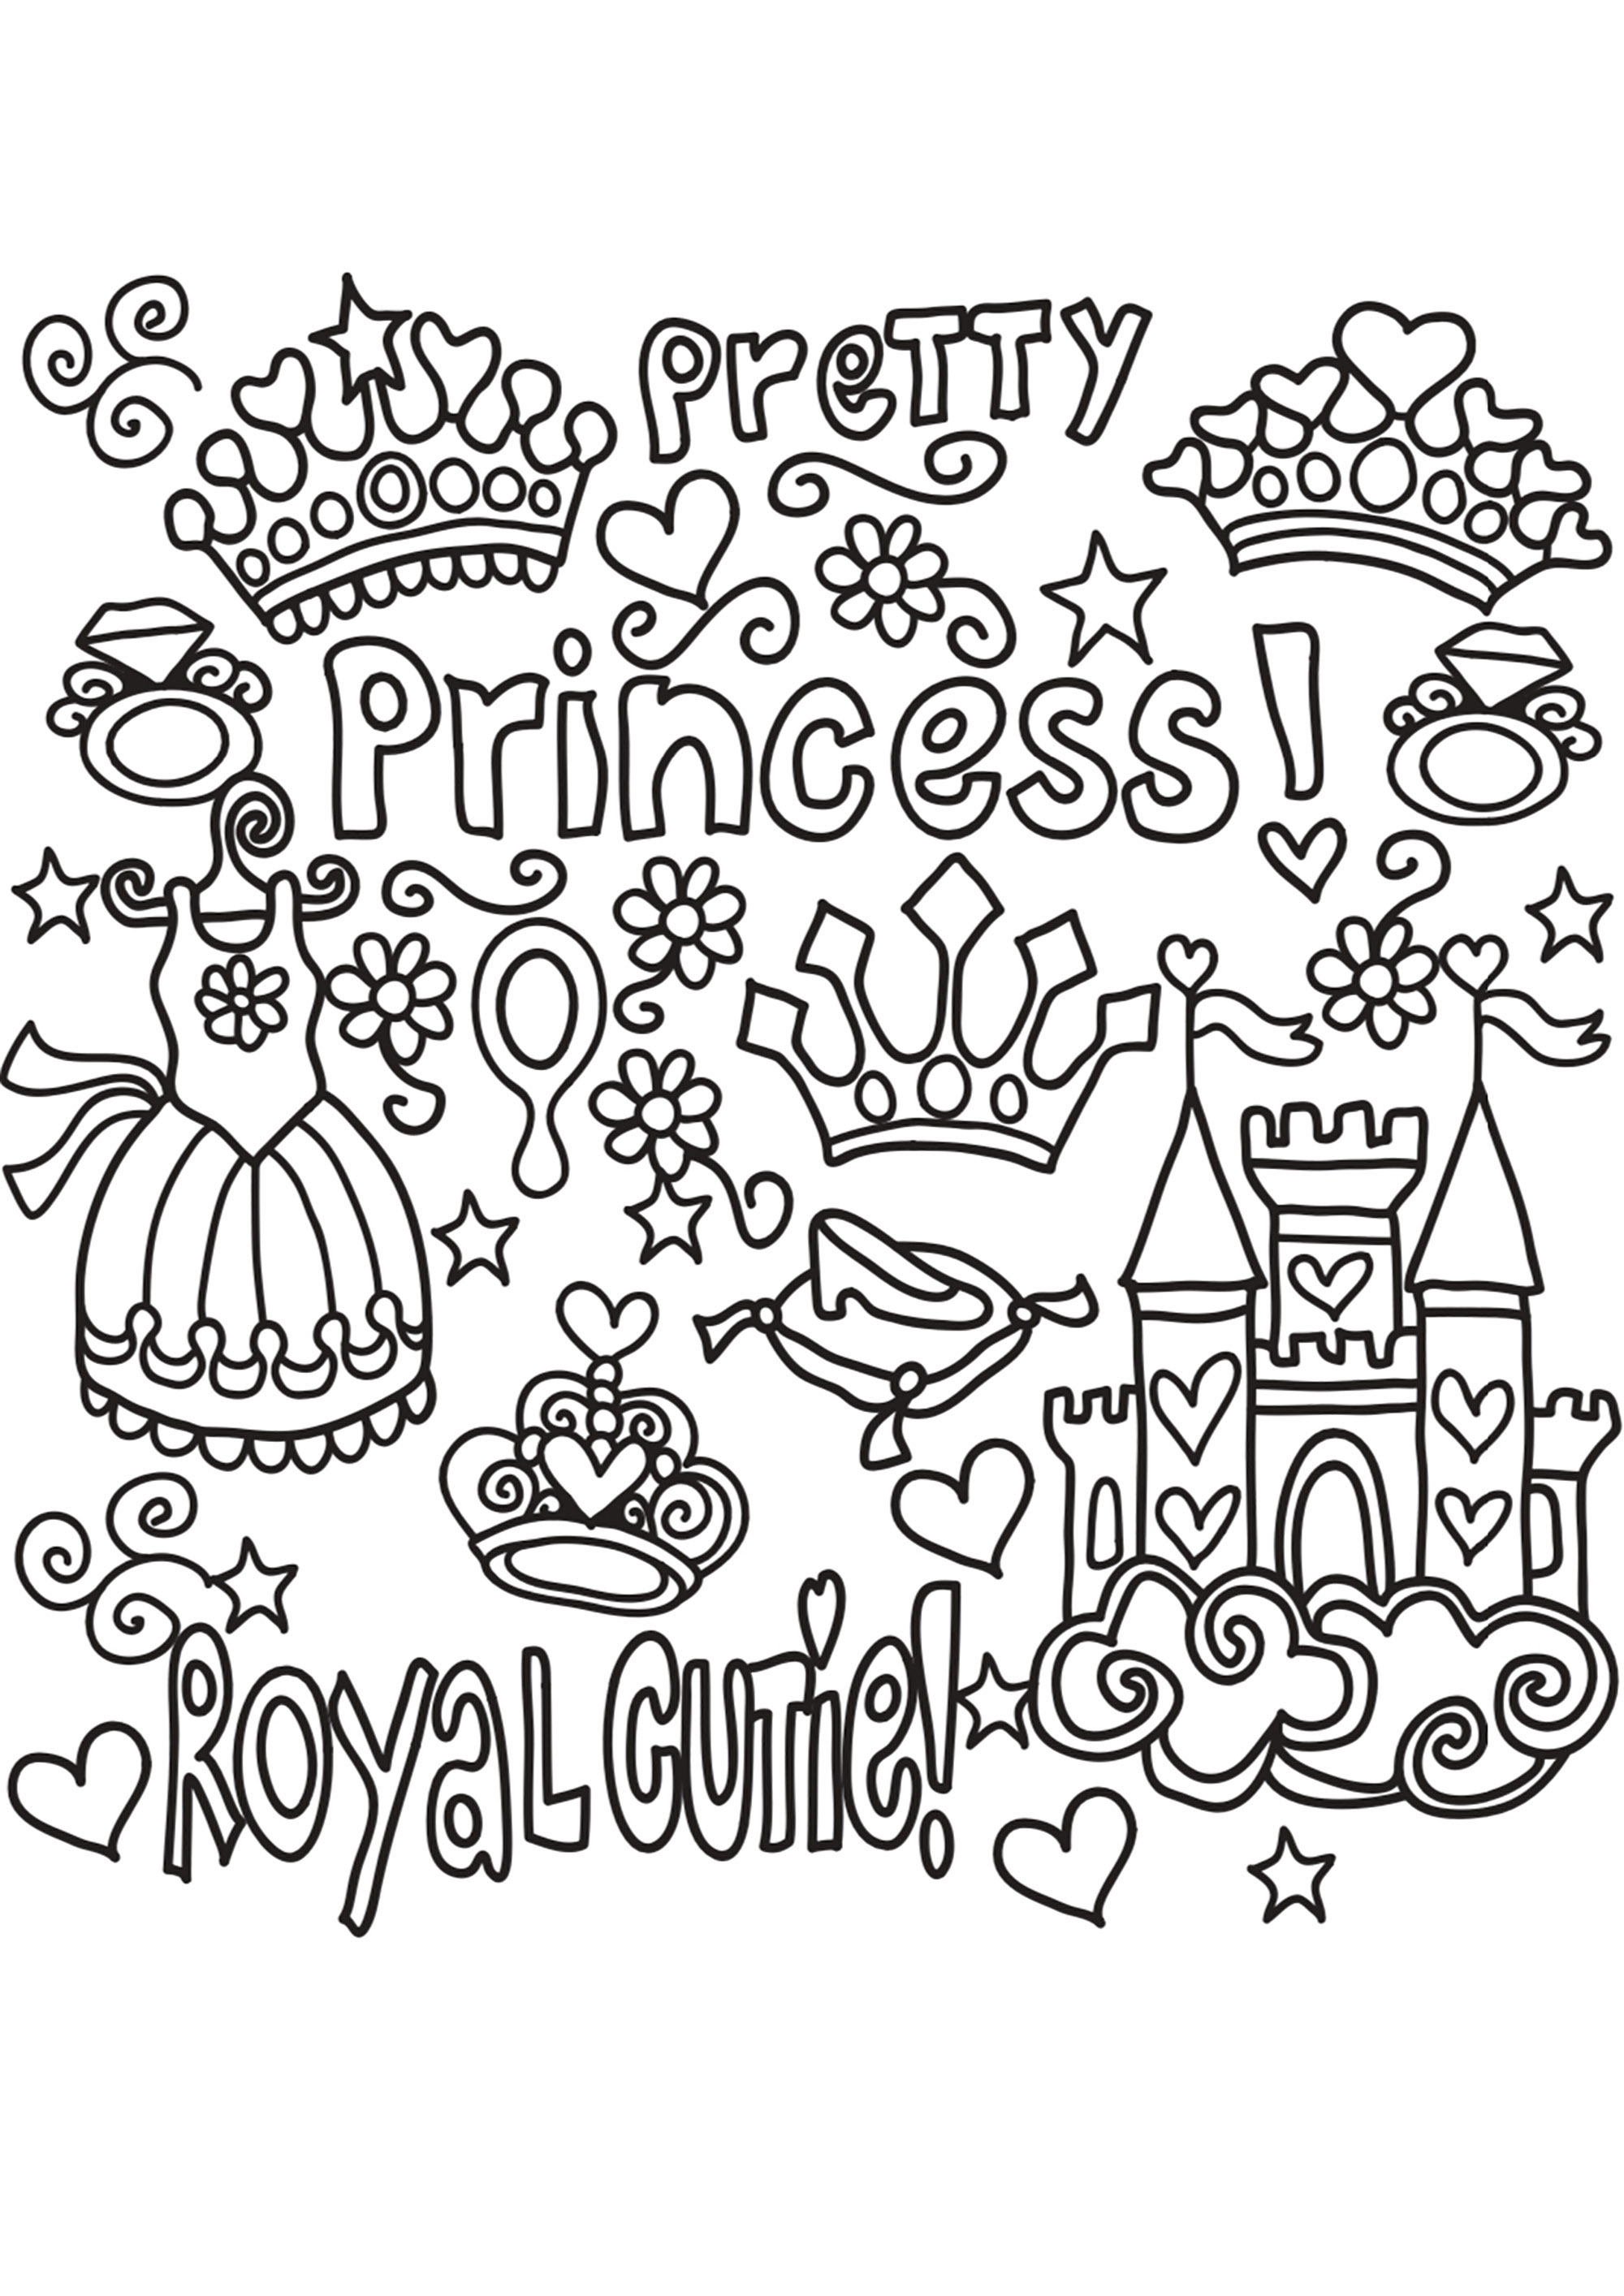 Ein hübsches Prinzessinnen-Kritzelbild. Ein Prinzessinnenkleid, ein Diadem, eine Krone, ein Schloss ... und schöne Worte ... alles, um dich in ein verzaubertes Königreich zu entführen.